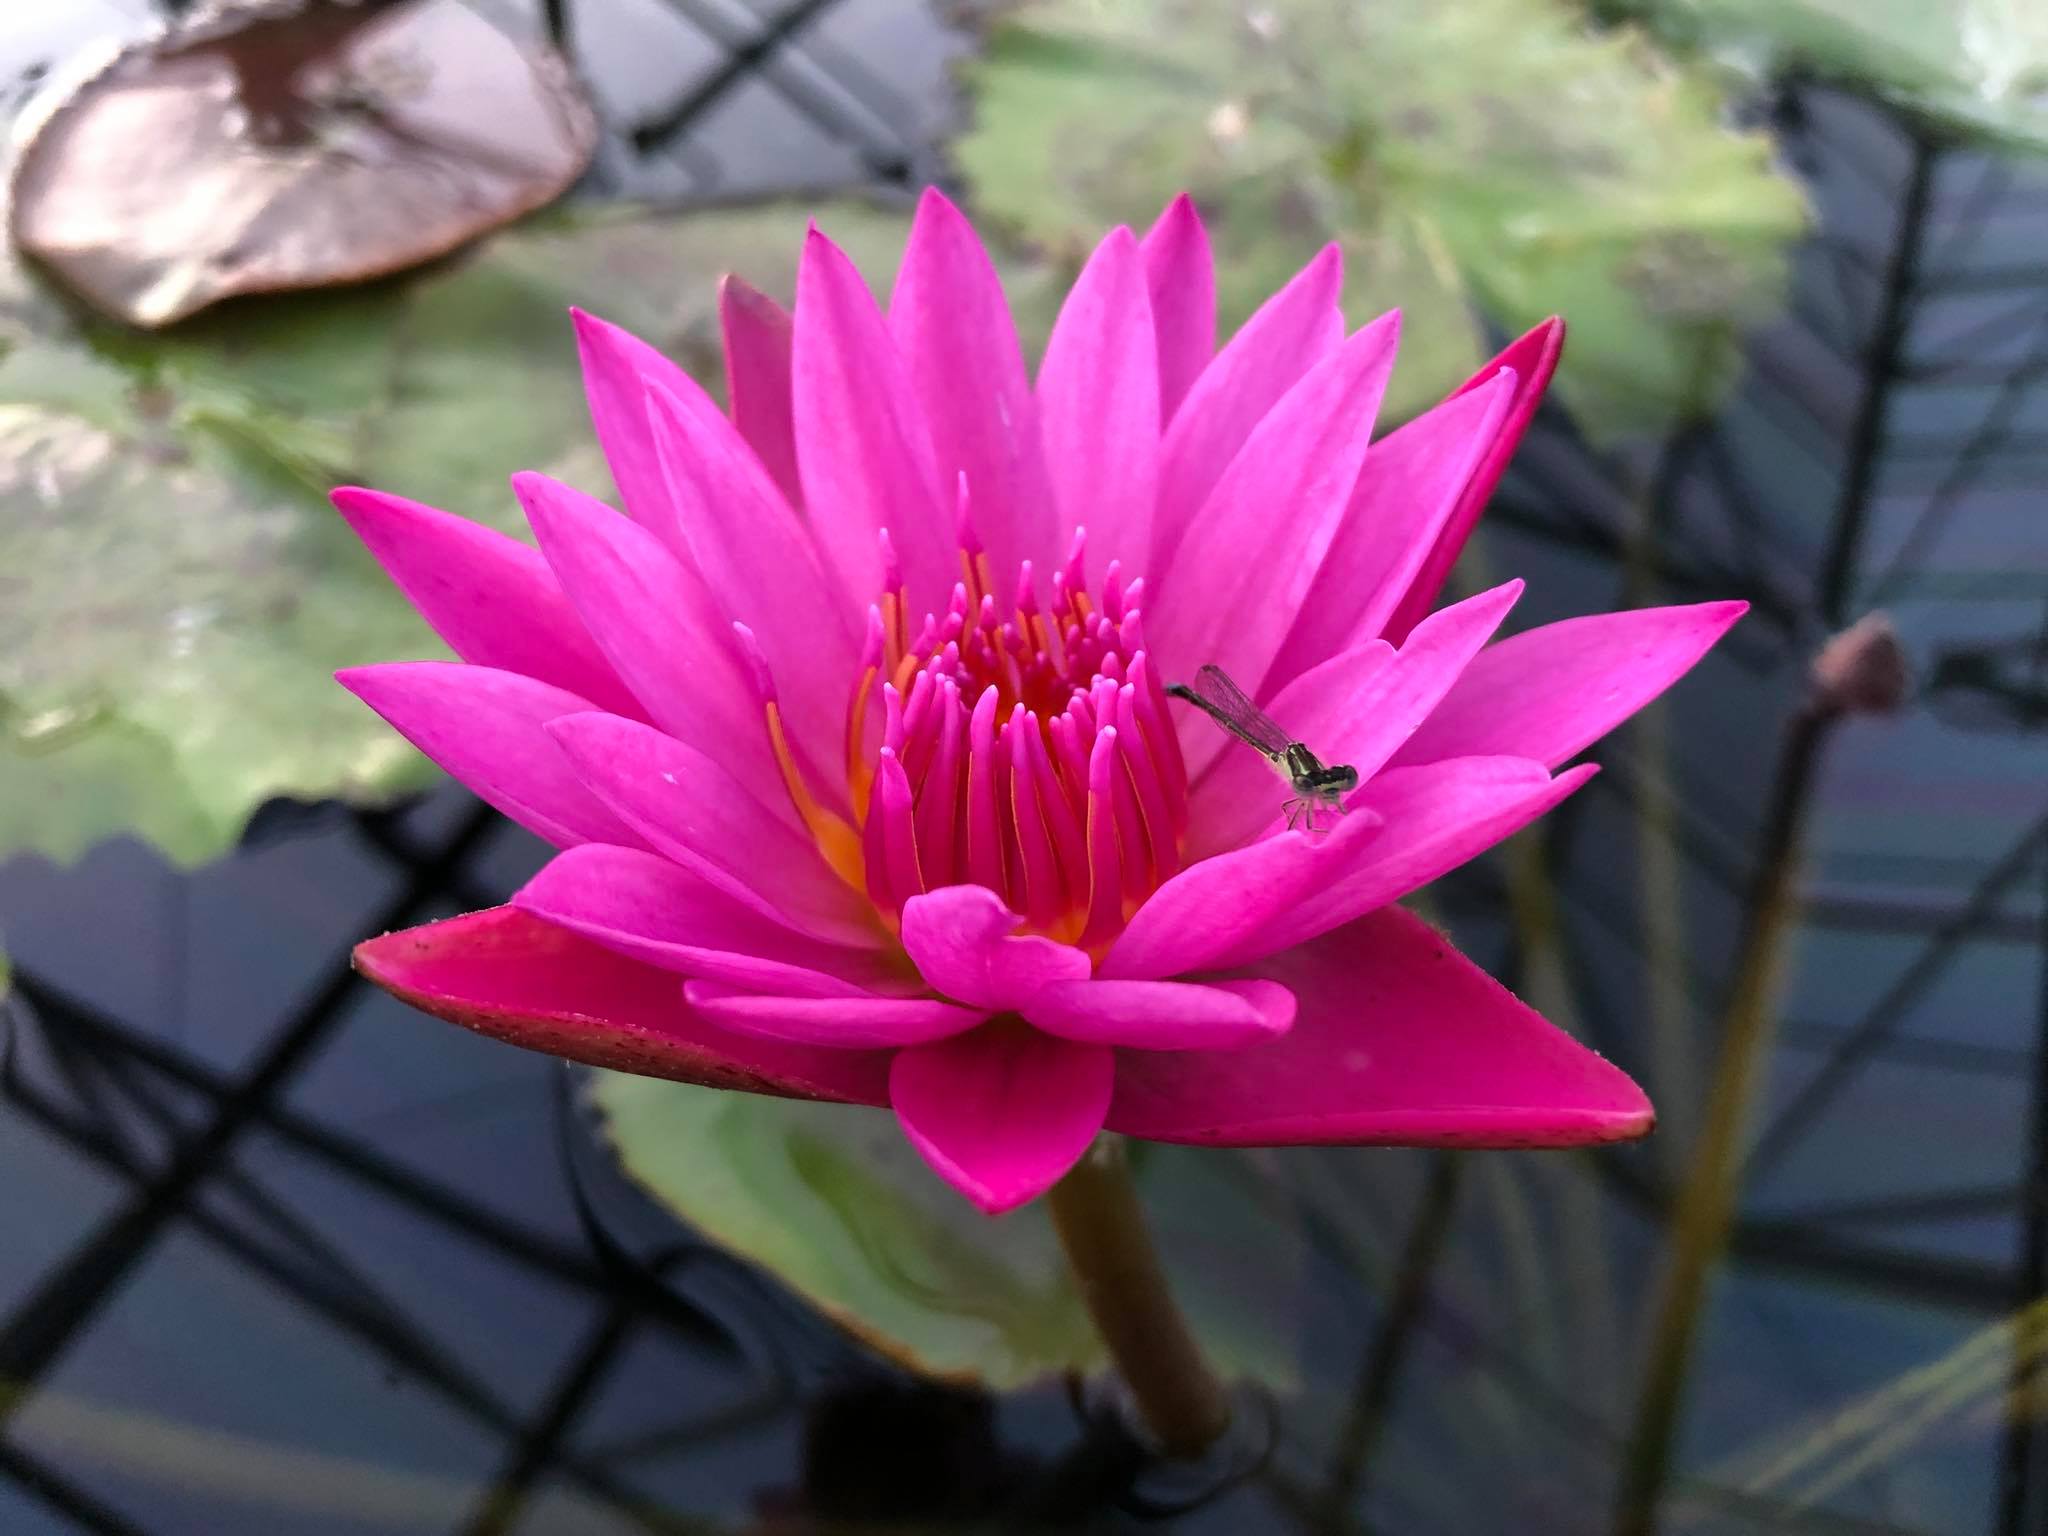 Pink & Purple Lotus, Lily Pads Pond